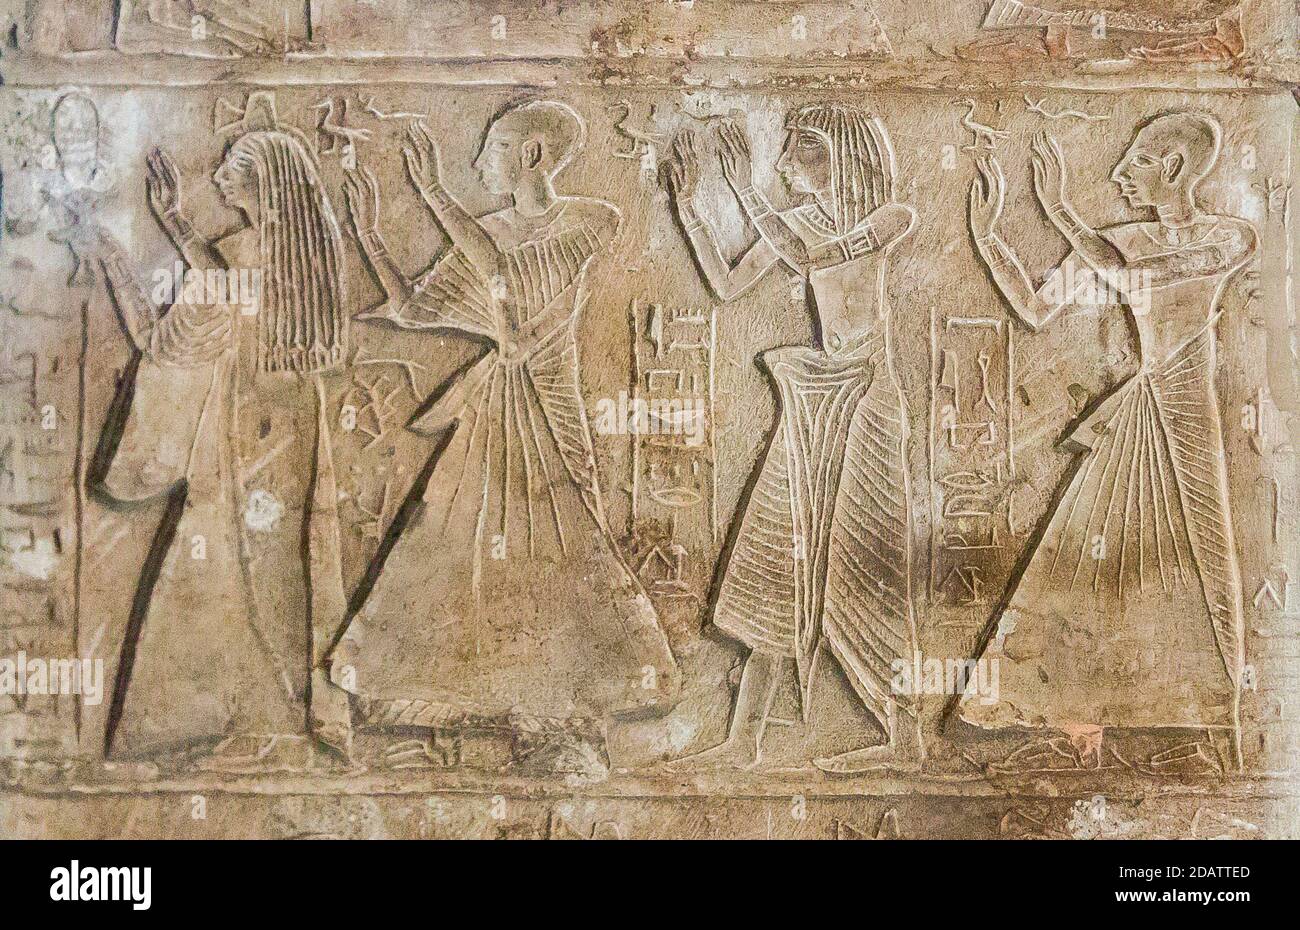 Égypte, le Caire, Musée égyptien, stela à plateau rond de tout, général du temple d'Amun. Registre intermédiaire, les parents de tous prient. Banque D'Images